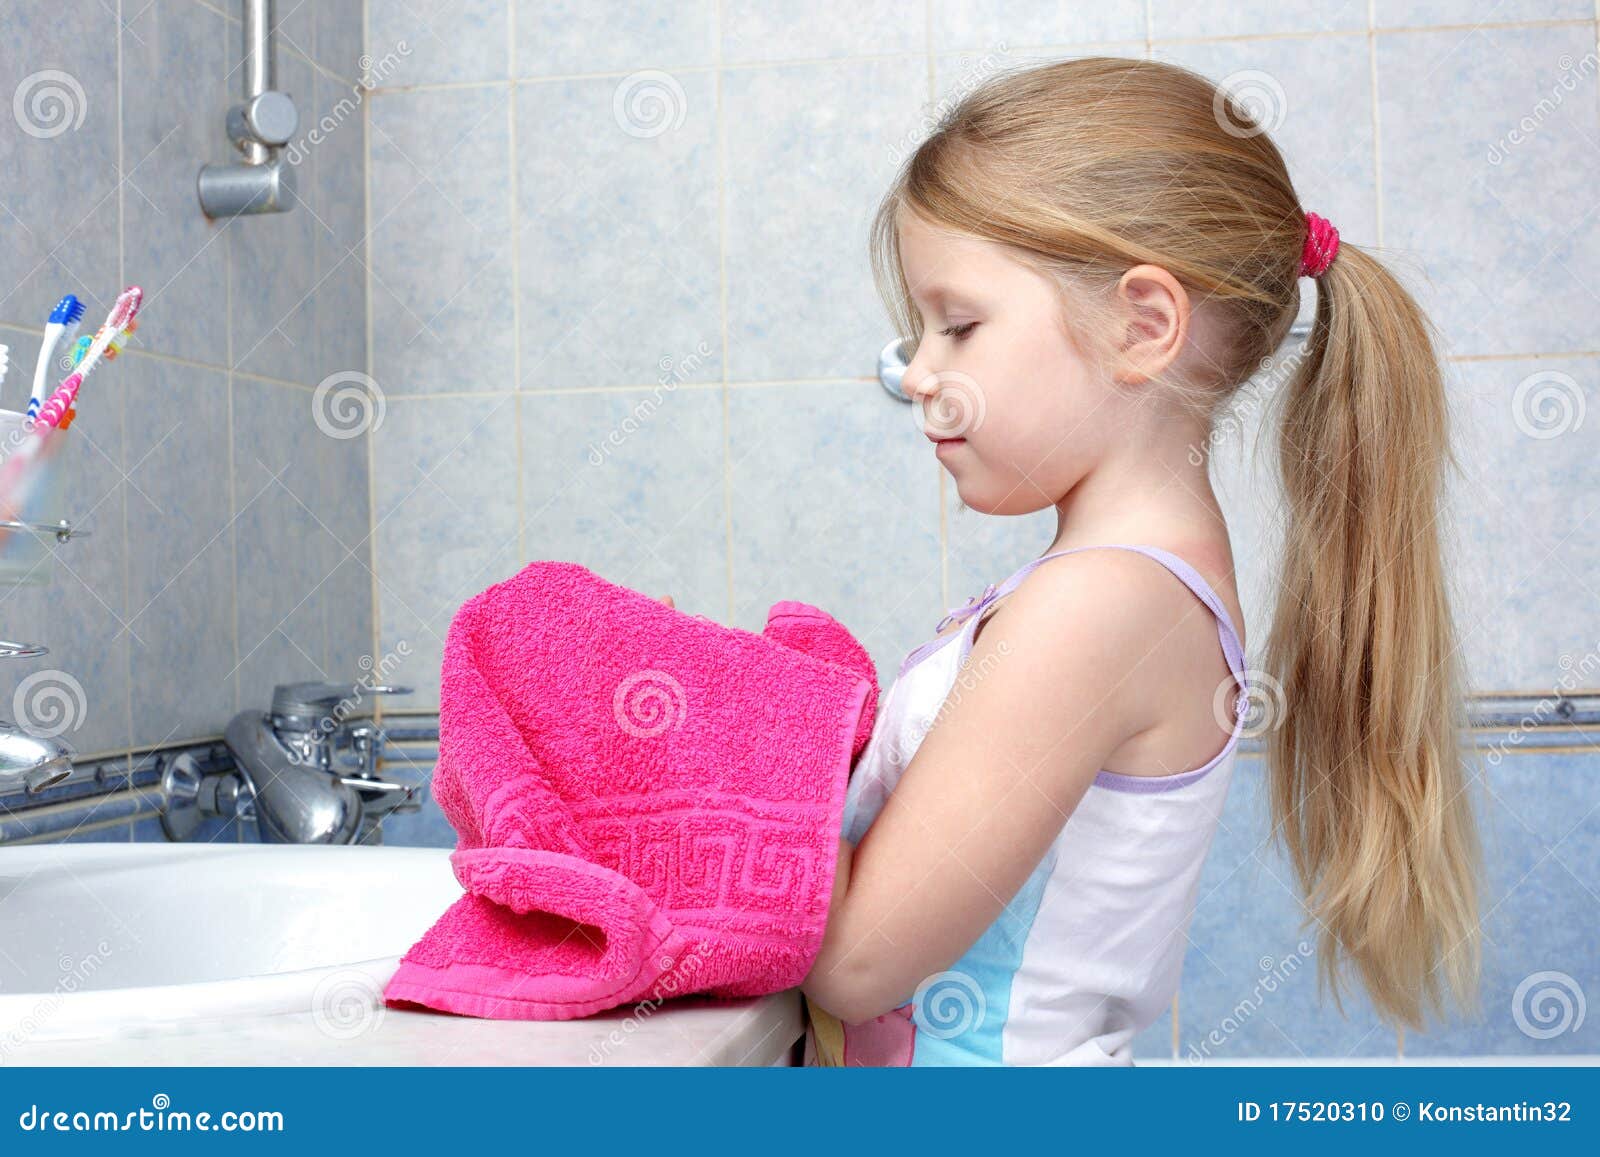 Папа дочку в туалете. Фото маленькая девочка в полотенце. Девочка переодевается в ванной. Маленькие девочки 9-11 в одном полотенце после ванной. Girl after Bathroom.